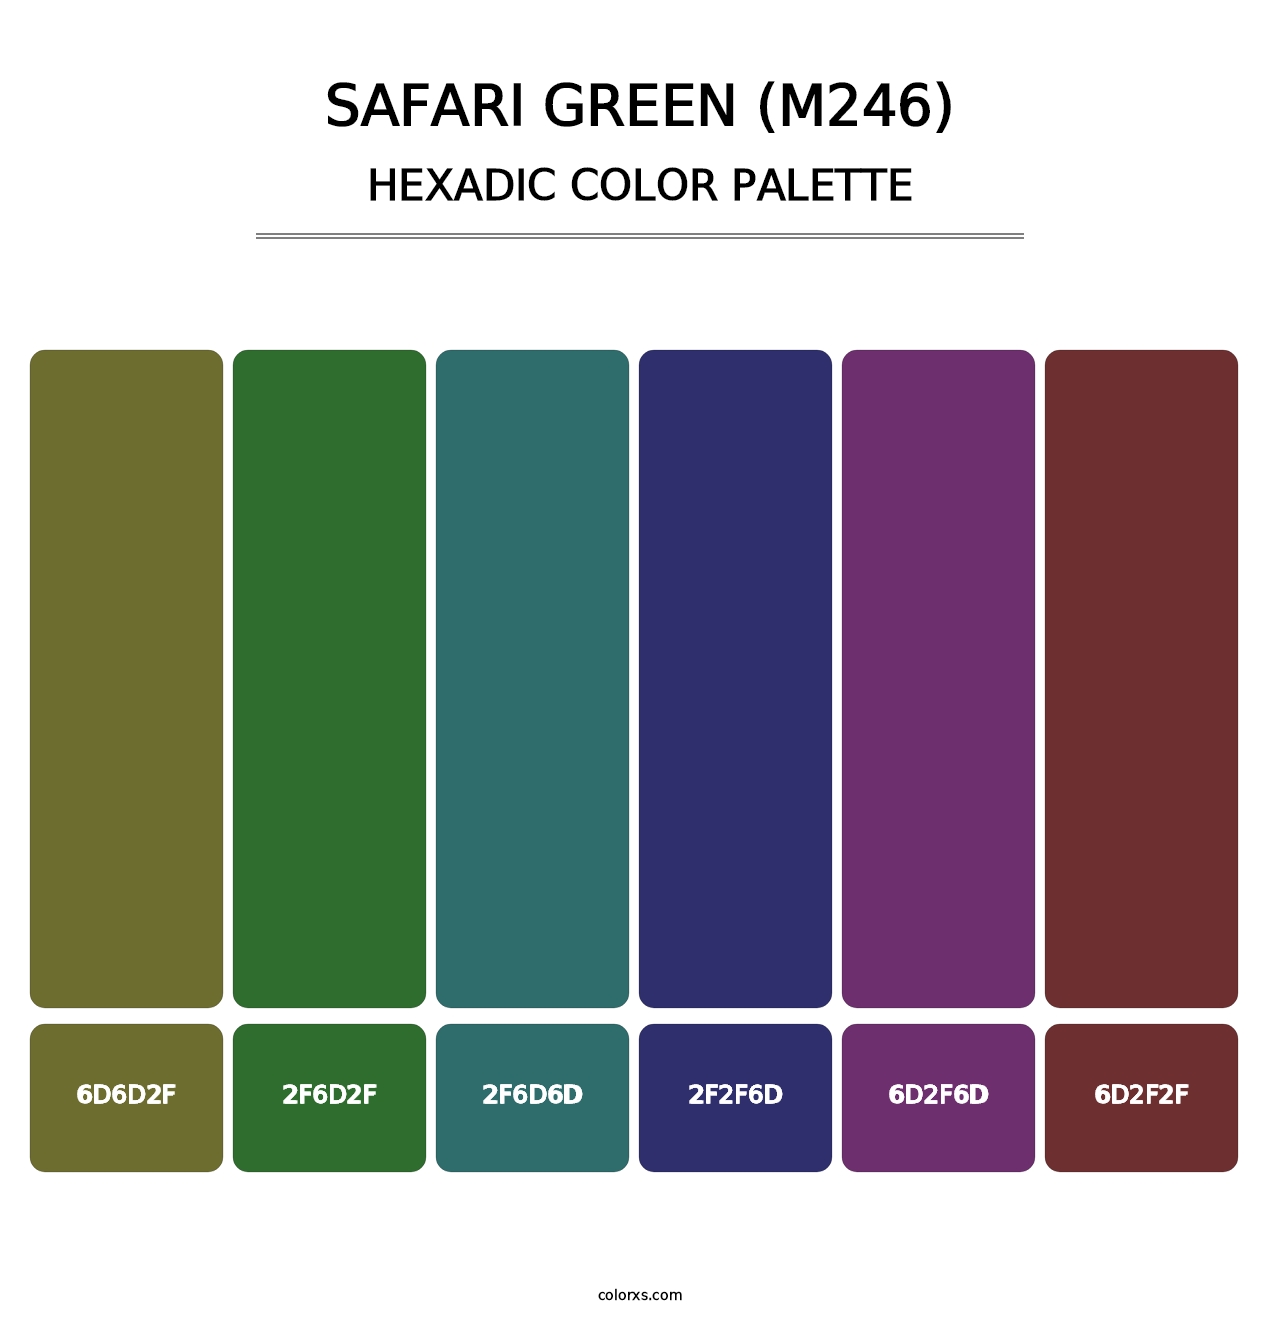 Safari Green (M246) - Hexadic Color Palette